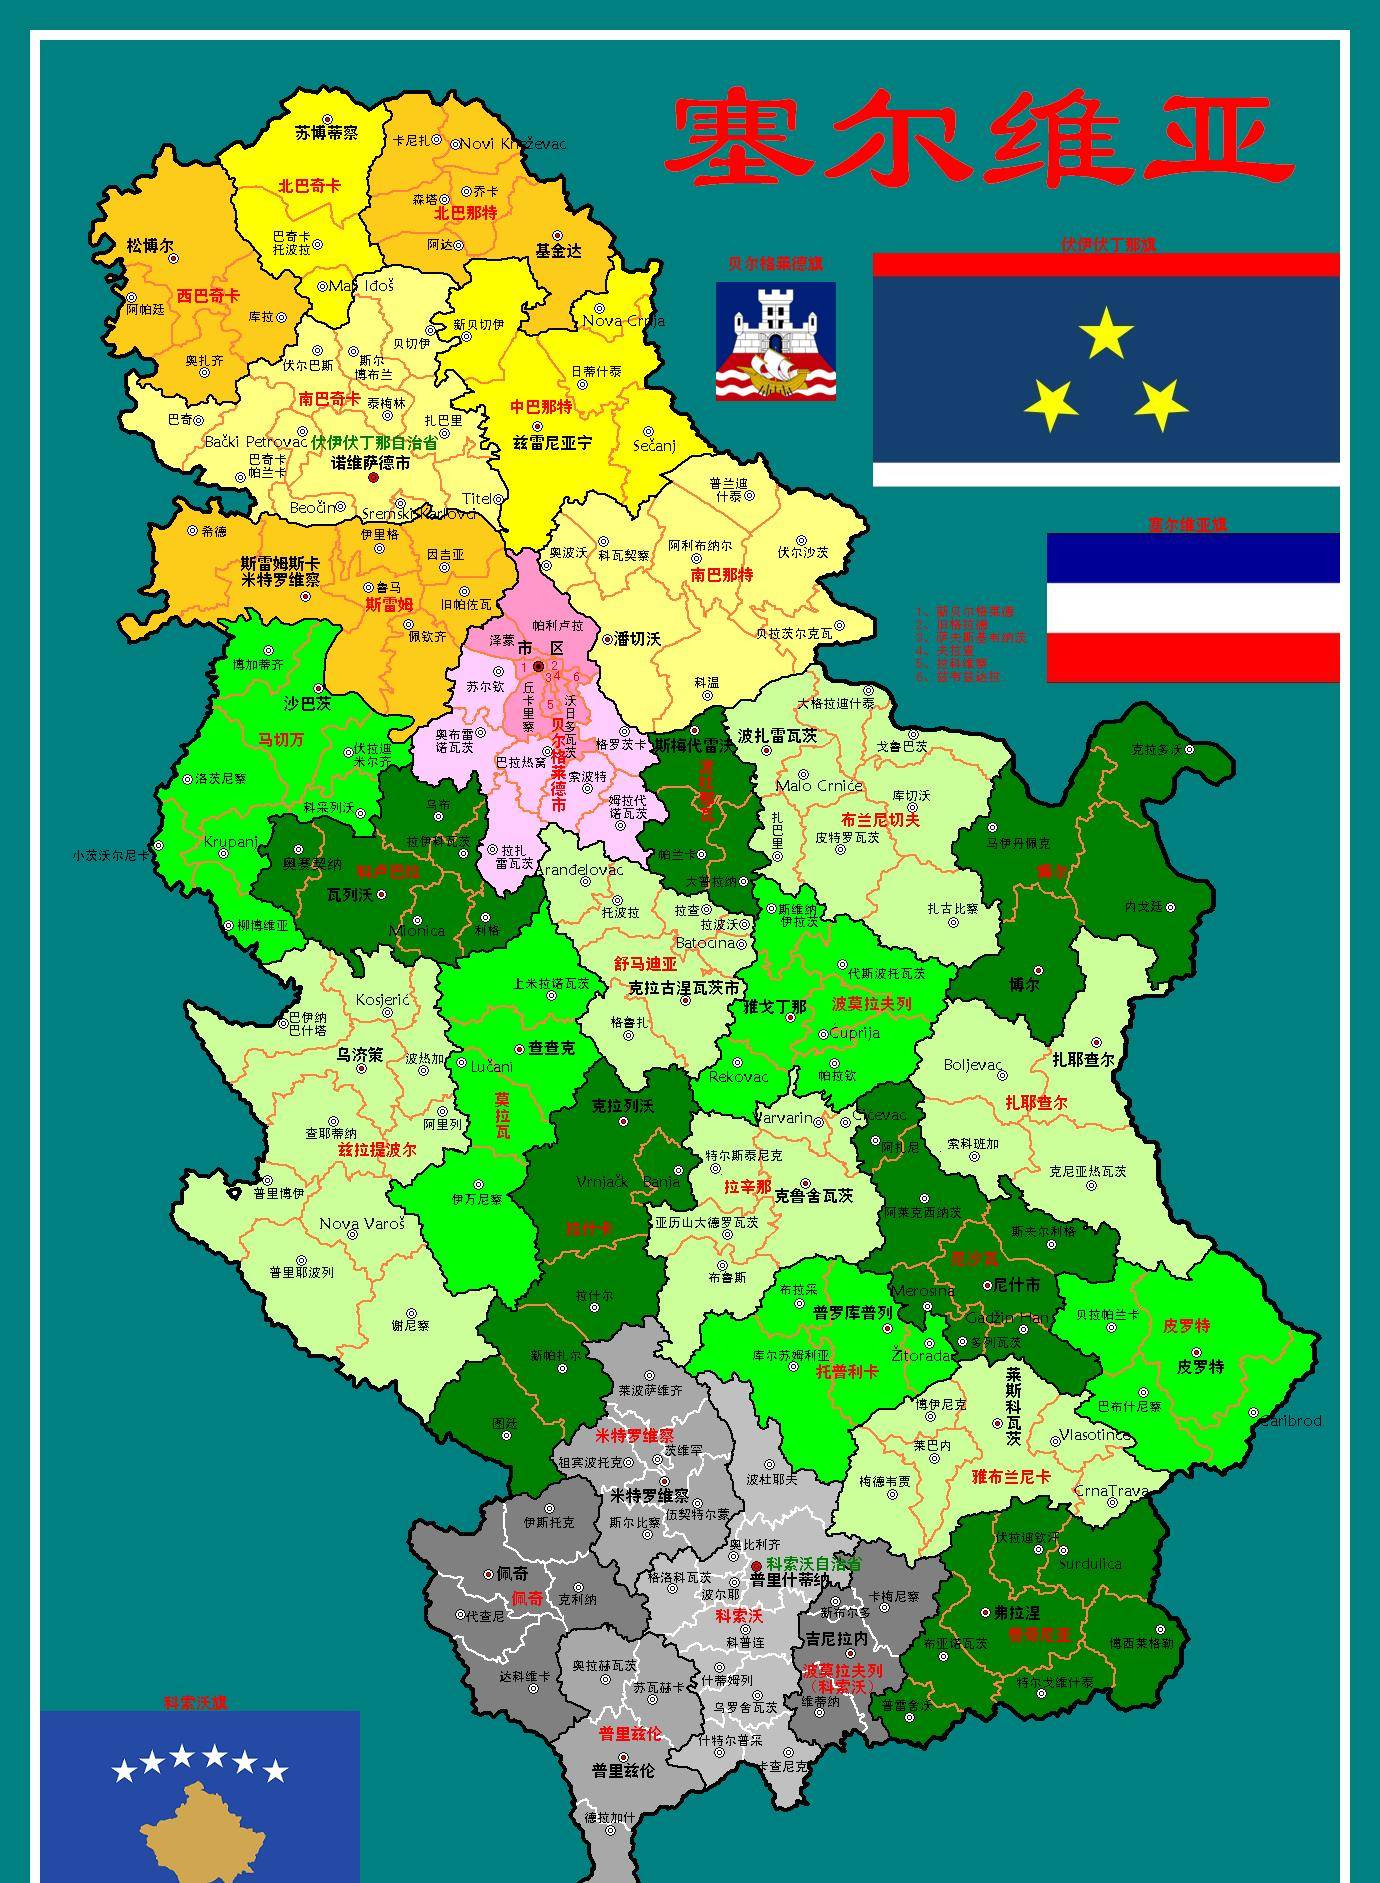 塞尔维亚共和国,简称塞尔维亚,是一个巴尔干半岛的国家,面积为88361